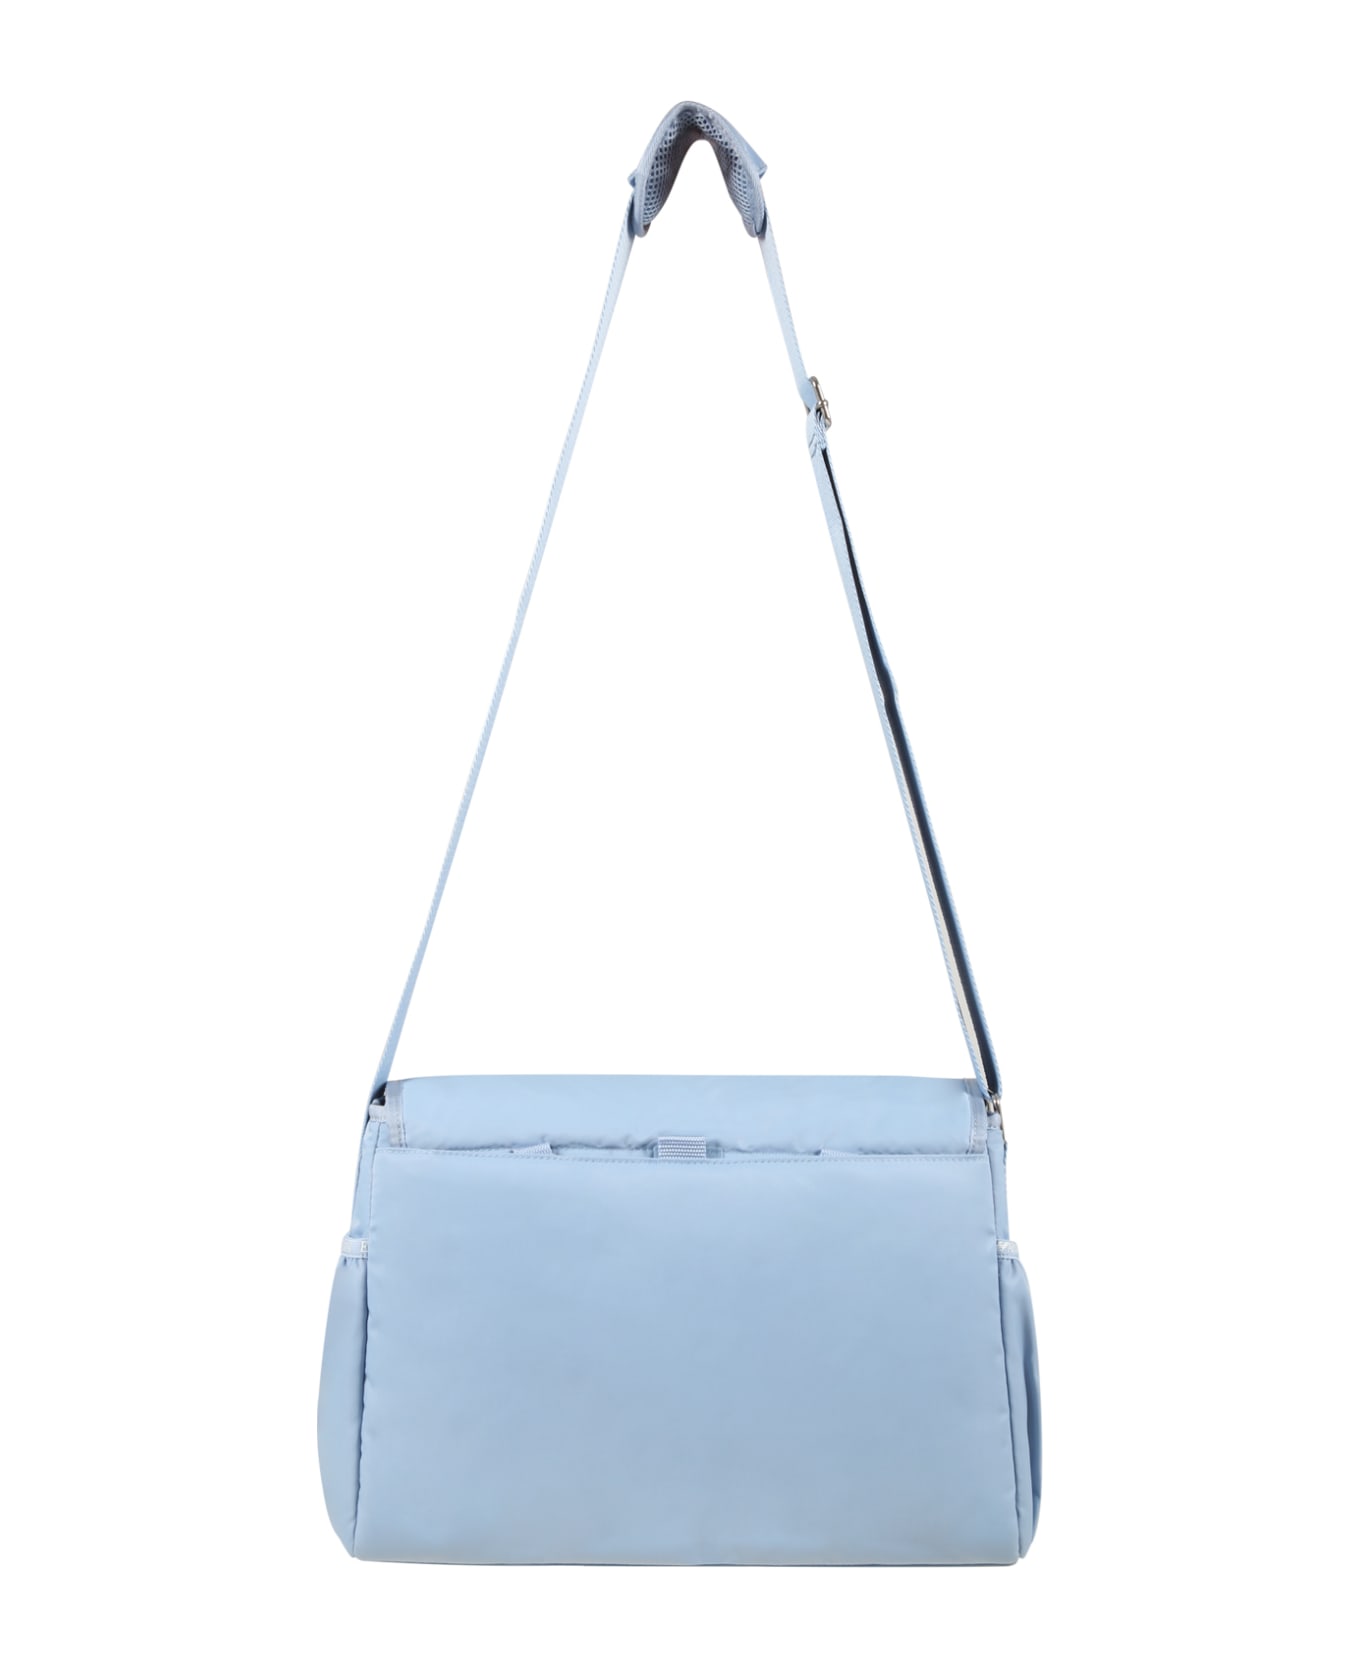 Emporio Armani Light Blue Mum Bag For Baby Boy With Logo - Light Blue